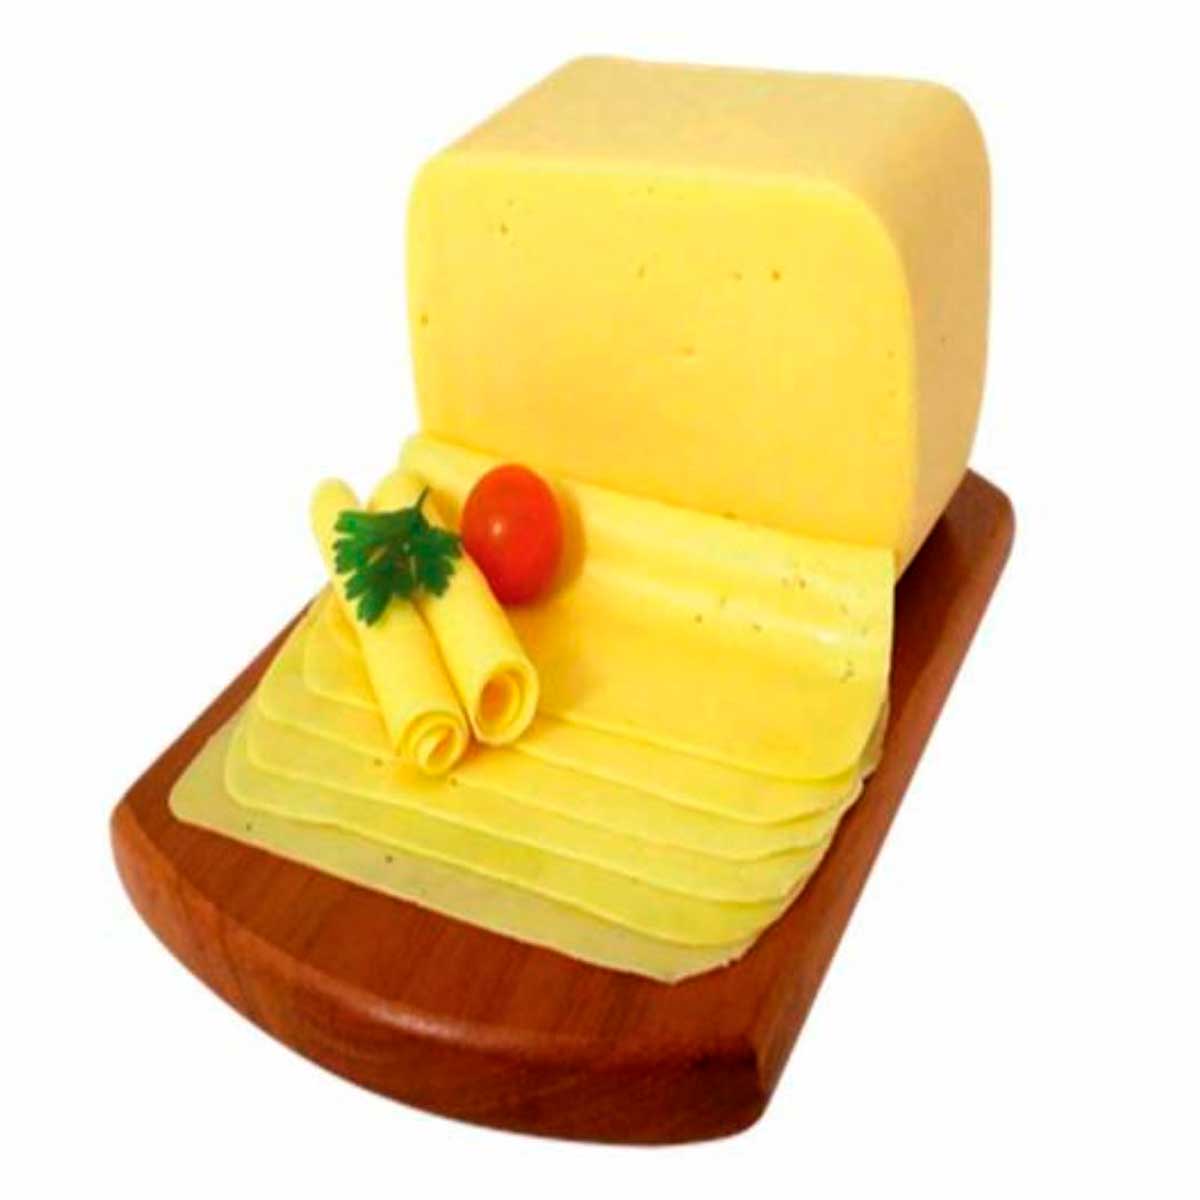 queijo-mussarela-matupi-fat-kg-1.jpg